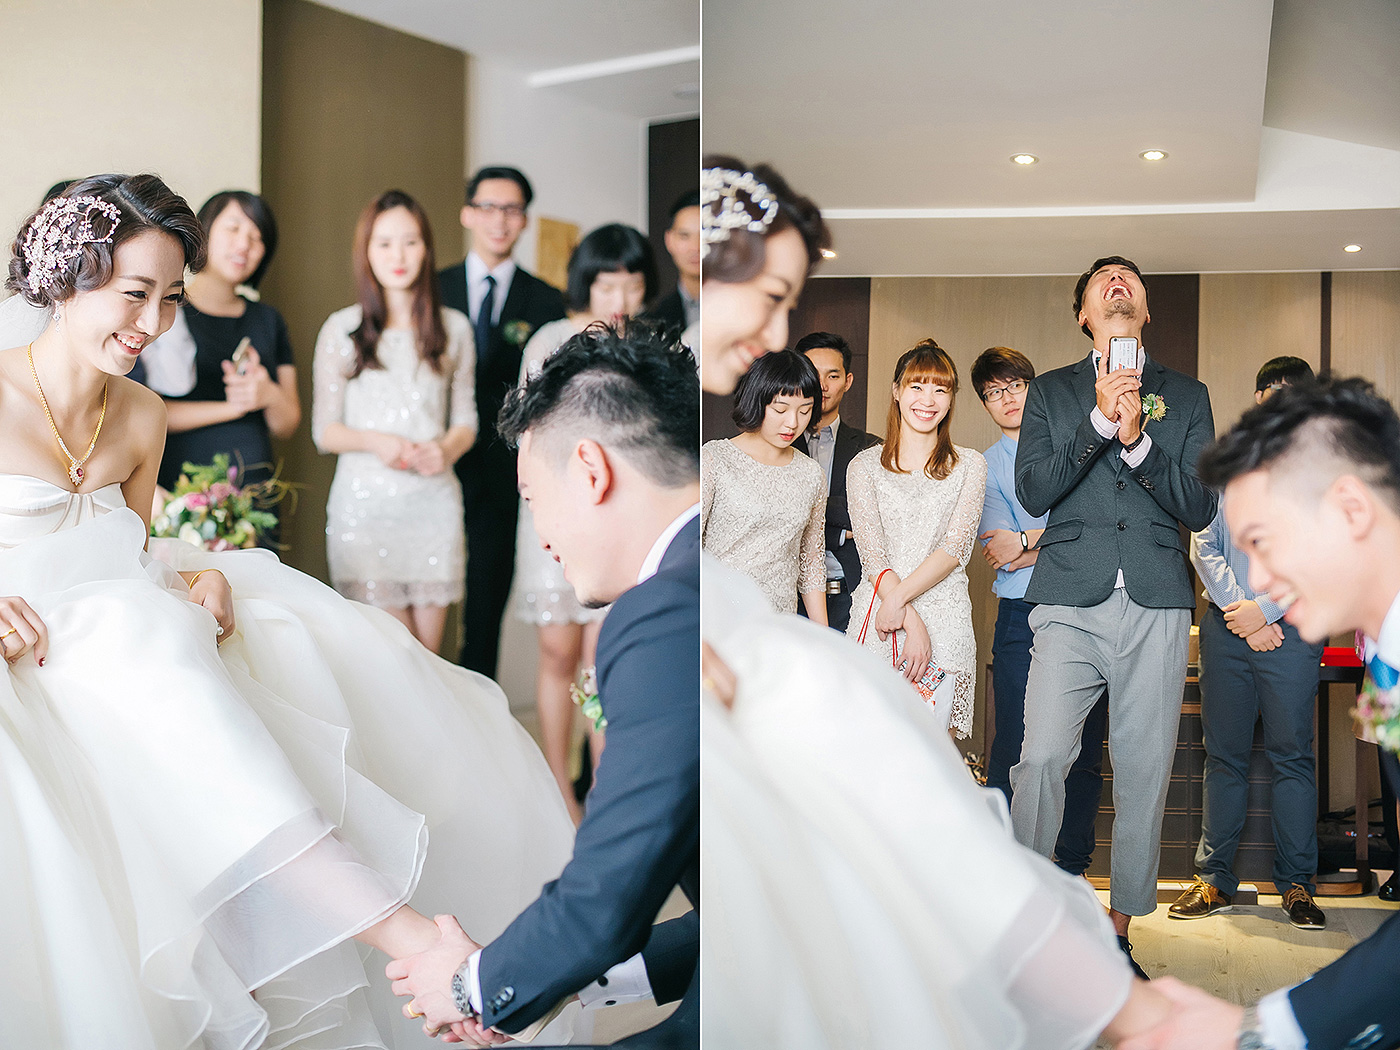 nickchang_wedding_finart-20